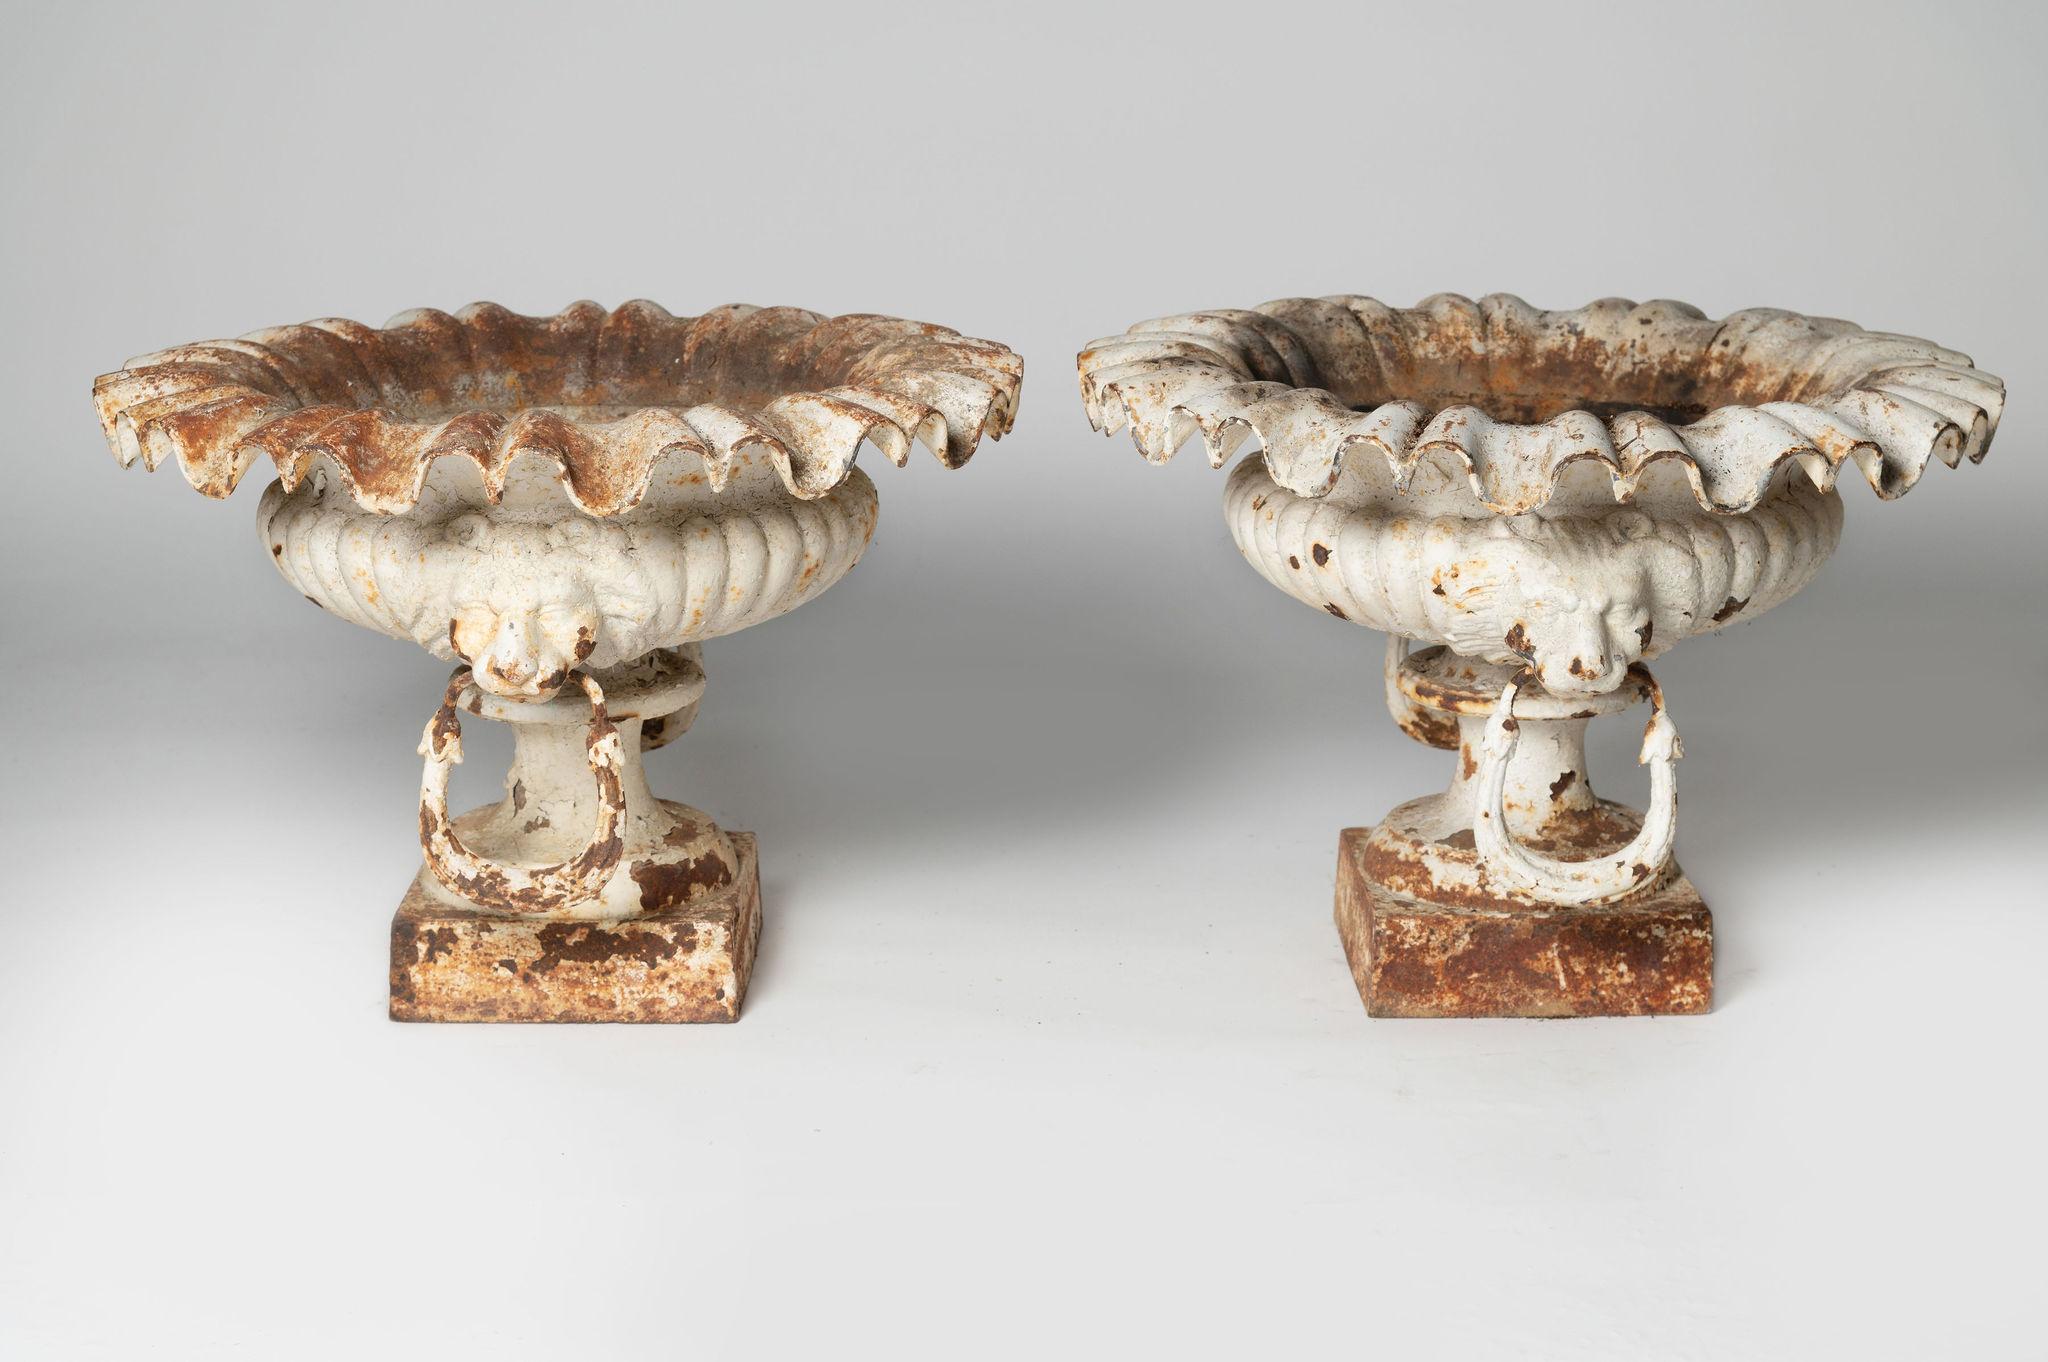 Großes Paar antiker französischer Gusseisen-Urnen mit Löwenkopf aus dem 19. Jahrhundert, originaler Anstrich. Kein Schaden.

Breite: 21 